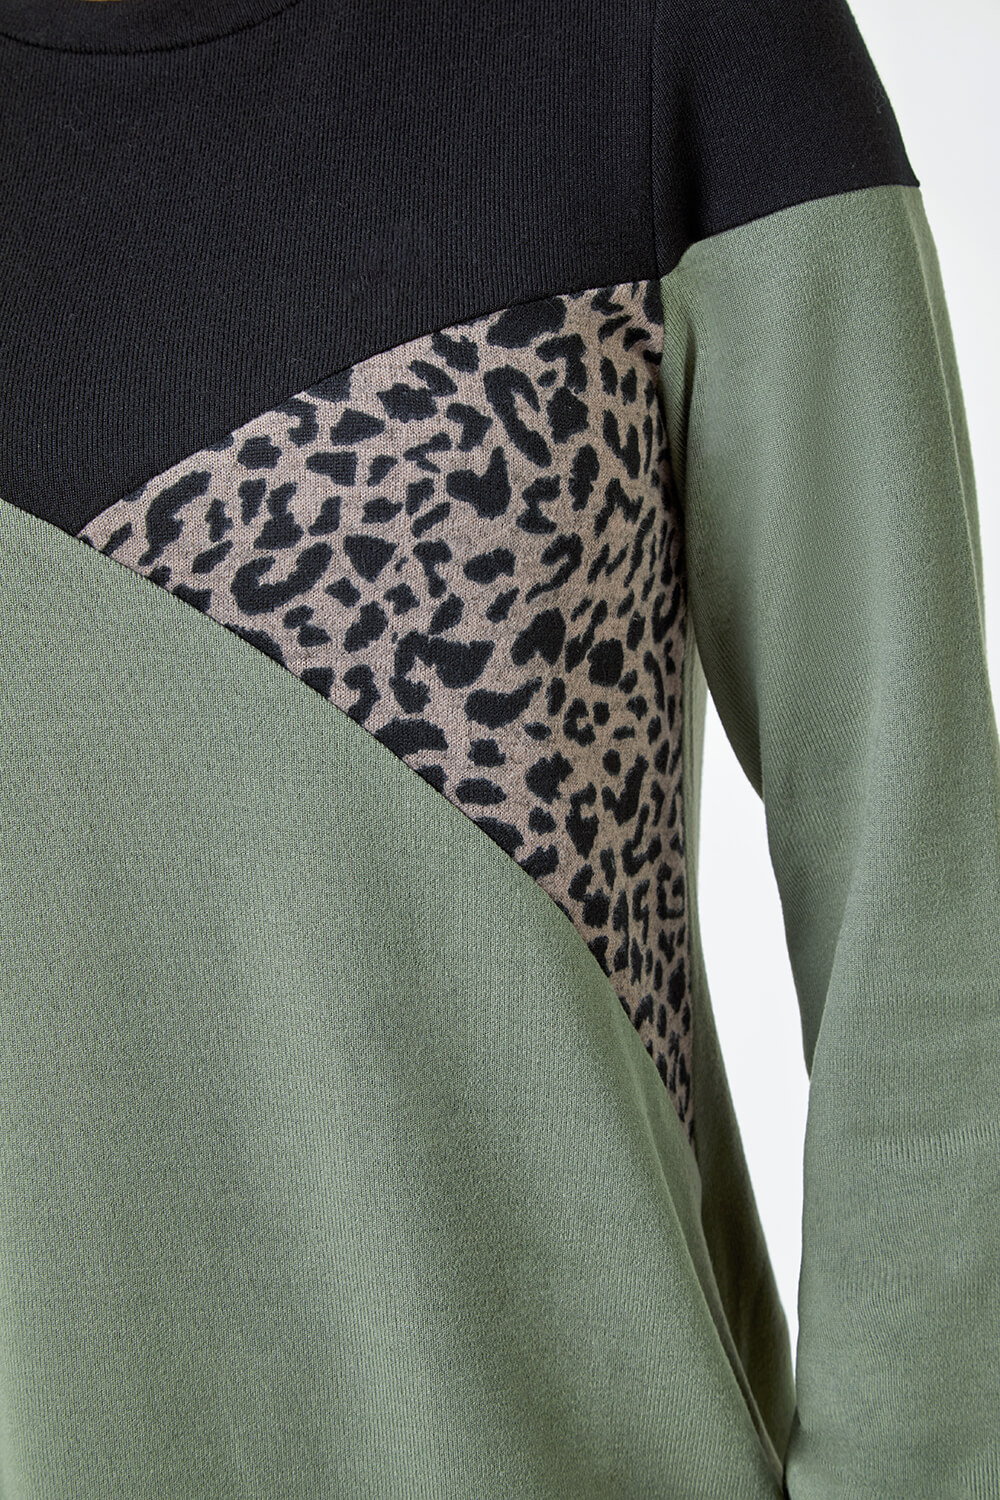 KHAKI Petite Leopard Print Colour Block Knit Dress, Image 5 of 5